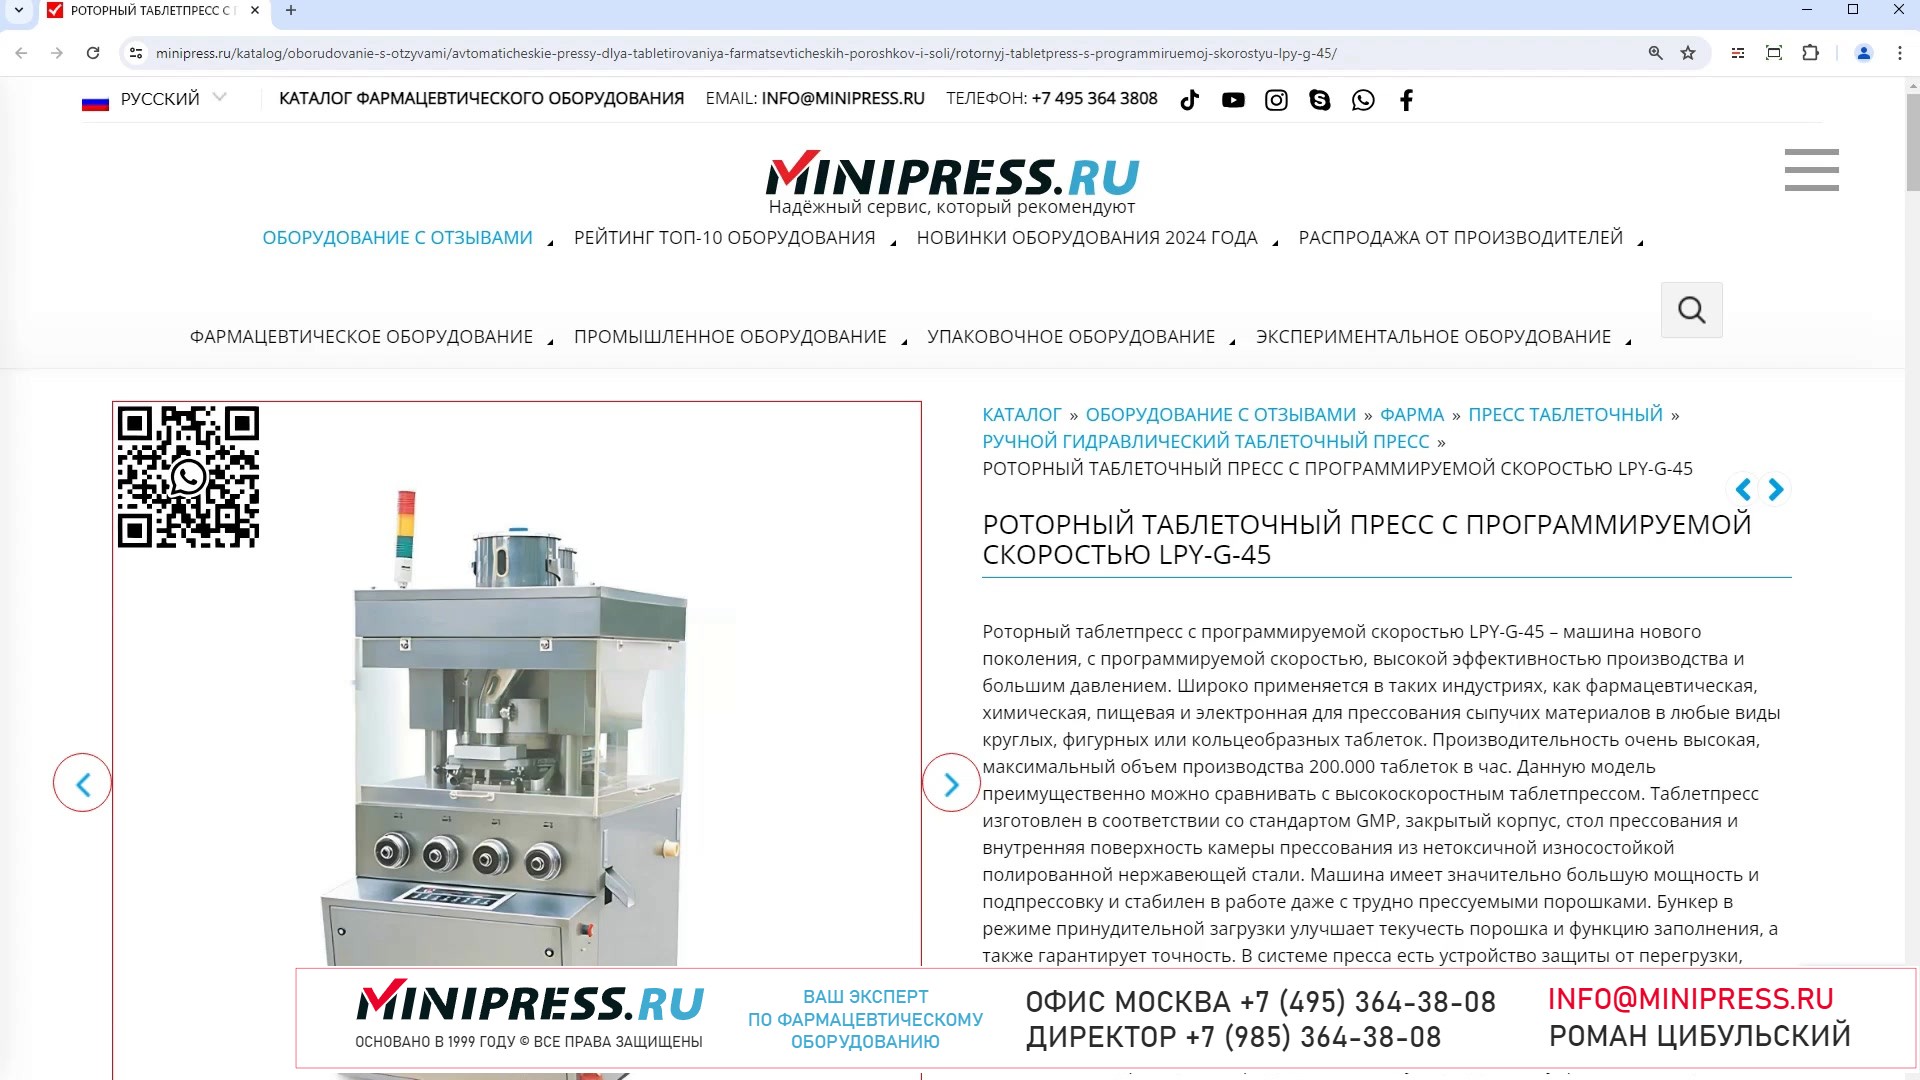 Minipress.ru Роторный таблеточный пресс с программируемой скоростью LPY-G-45